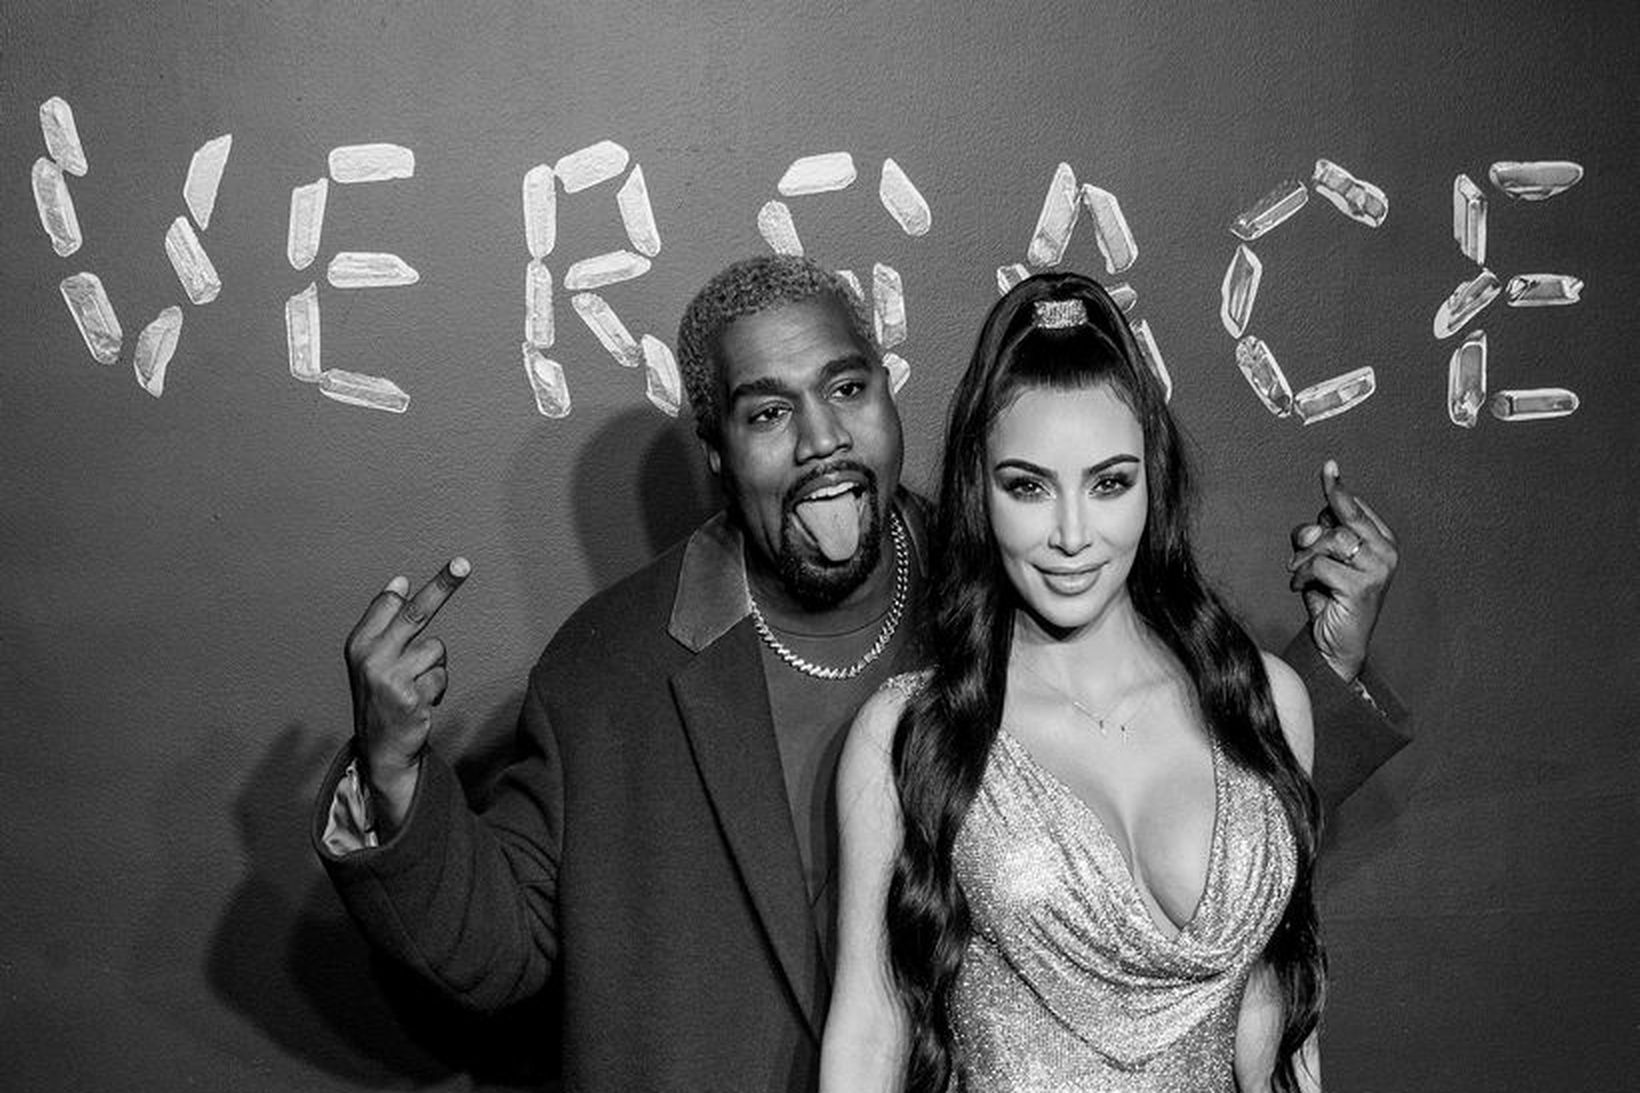 Líkur sækir líkan heim. Kanye West og Kim Kardashian West.